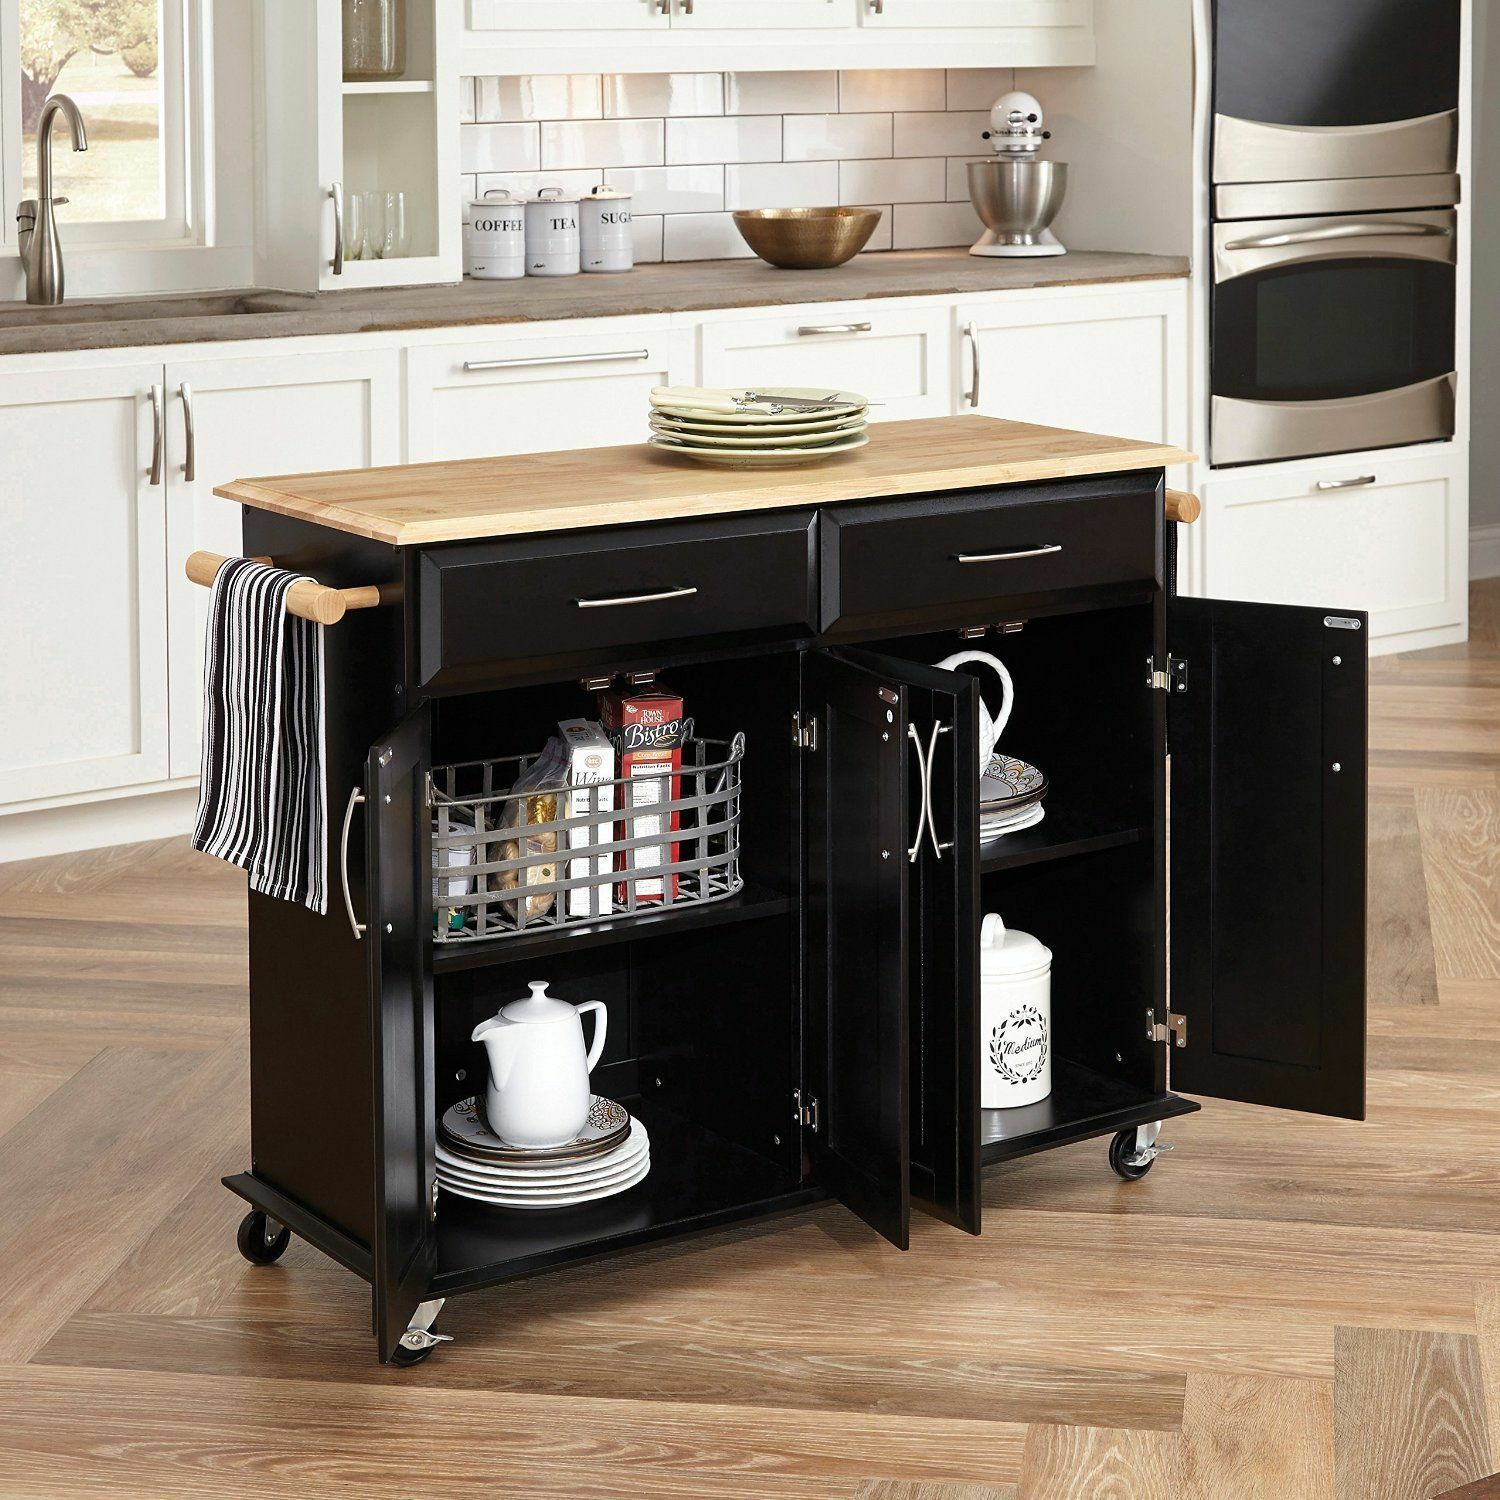 Kitchen Bar With Storage
 Modern Kitchen Island Storage Cart Dining Portable Wheels